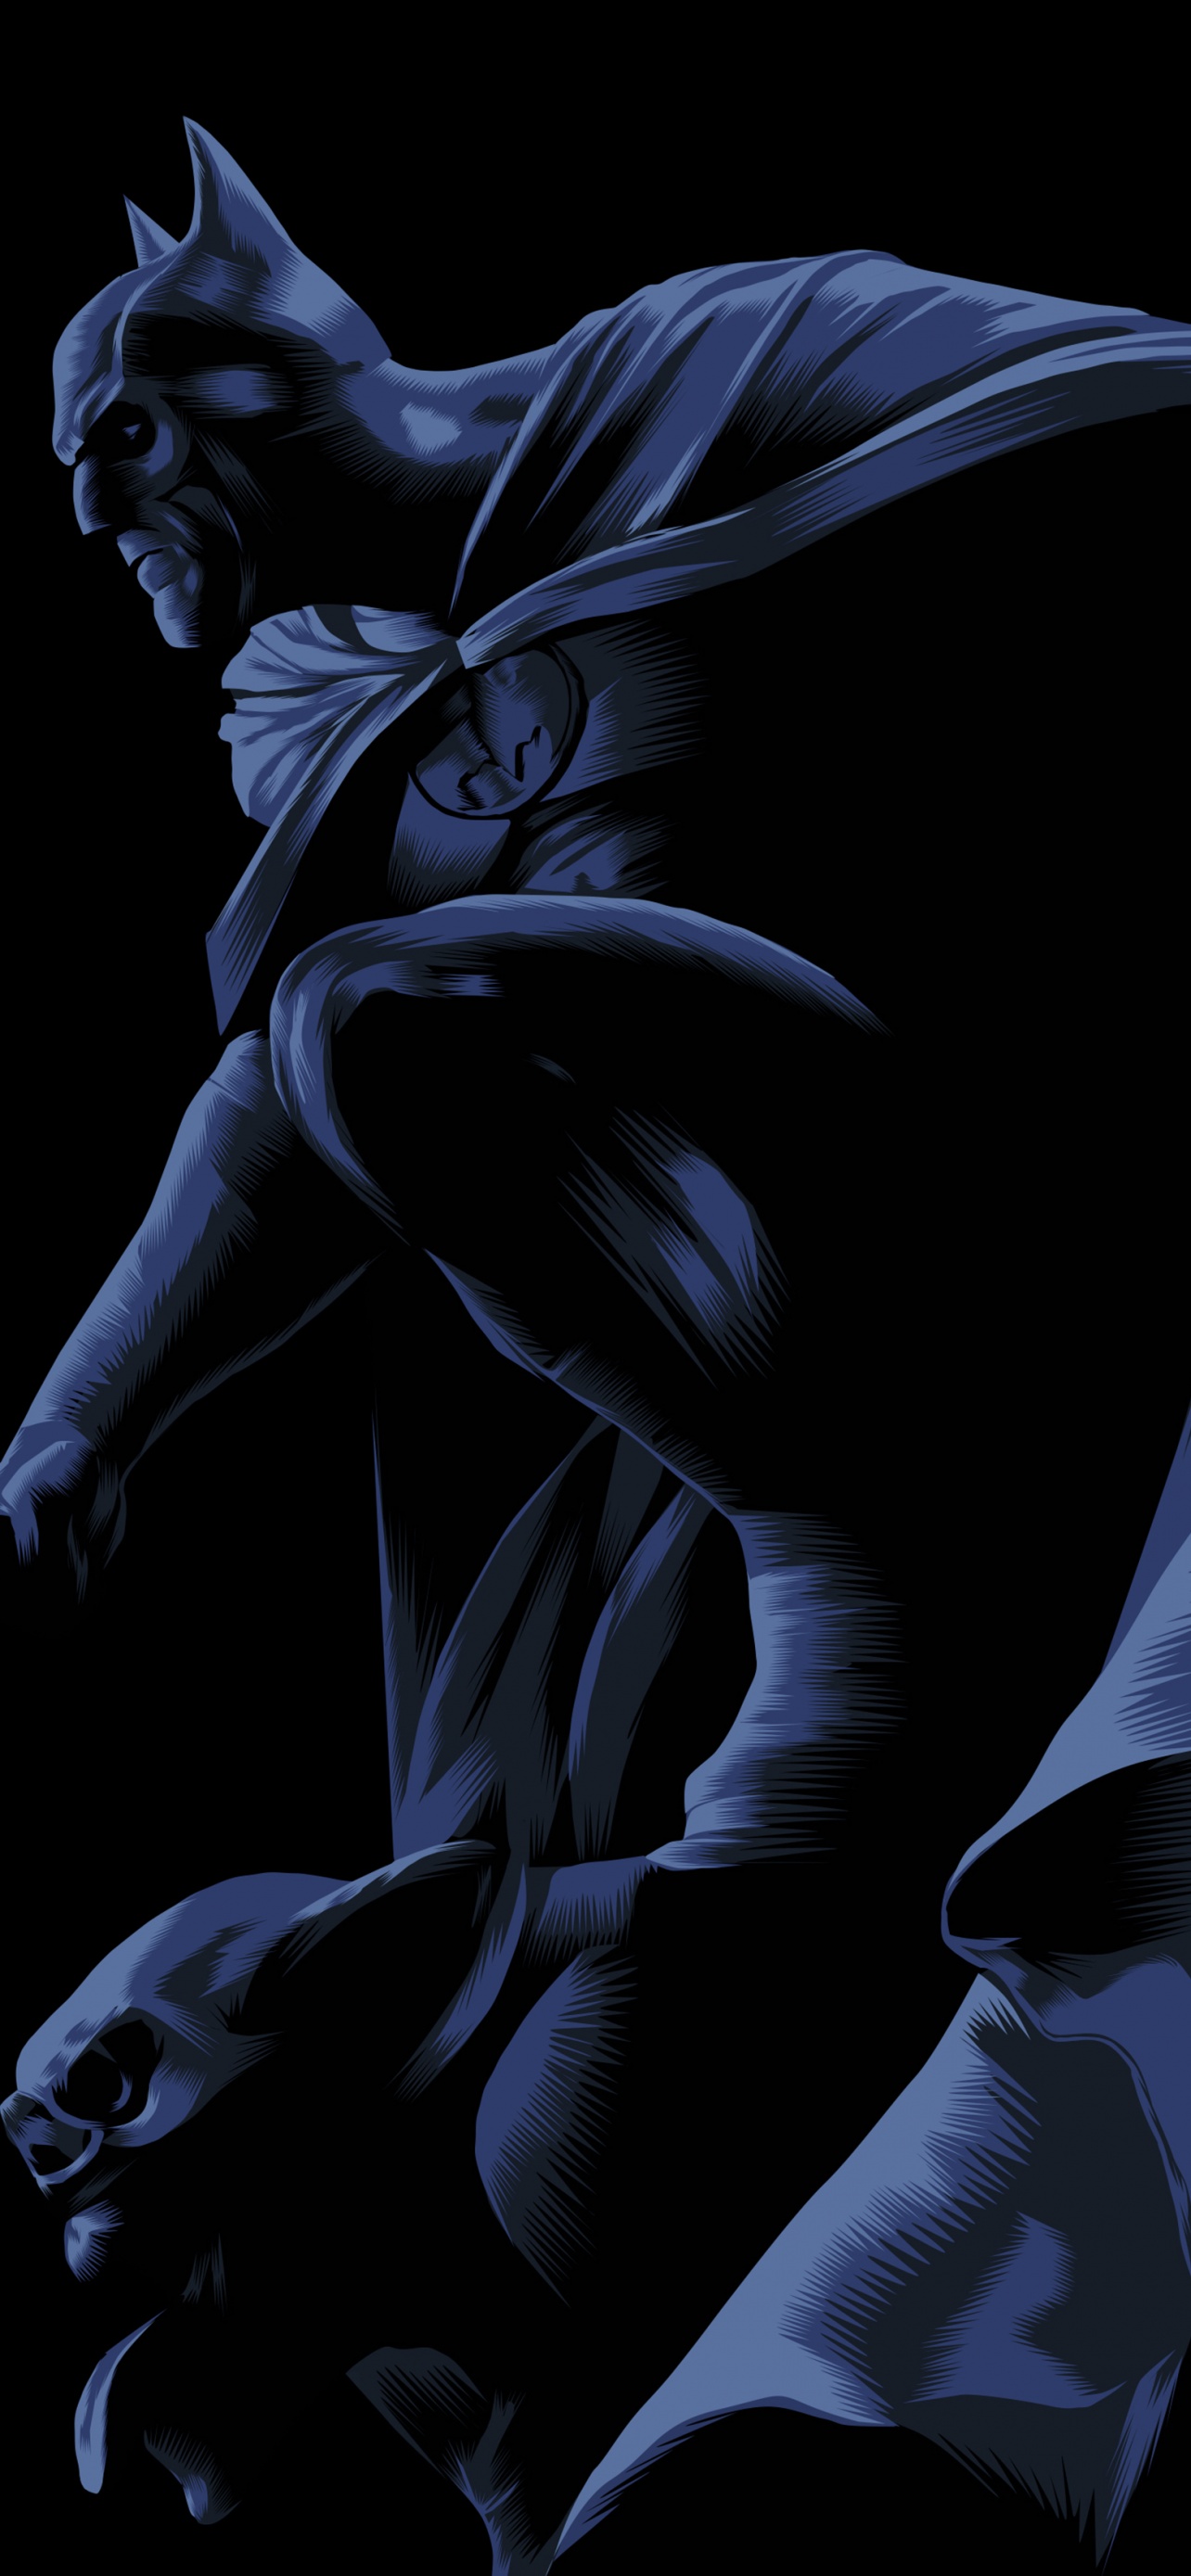 Batman Wallpaper 4K, DC Superheroes, DC Comics, Black background, Graphics CGI